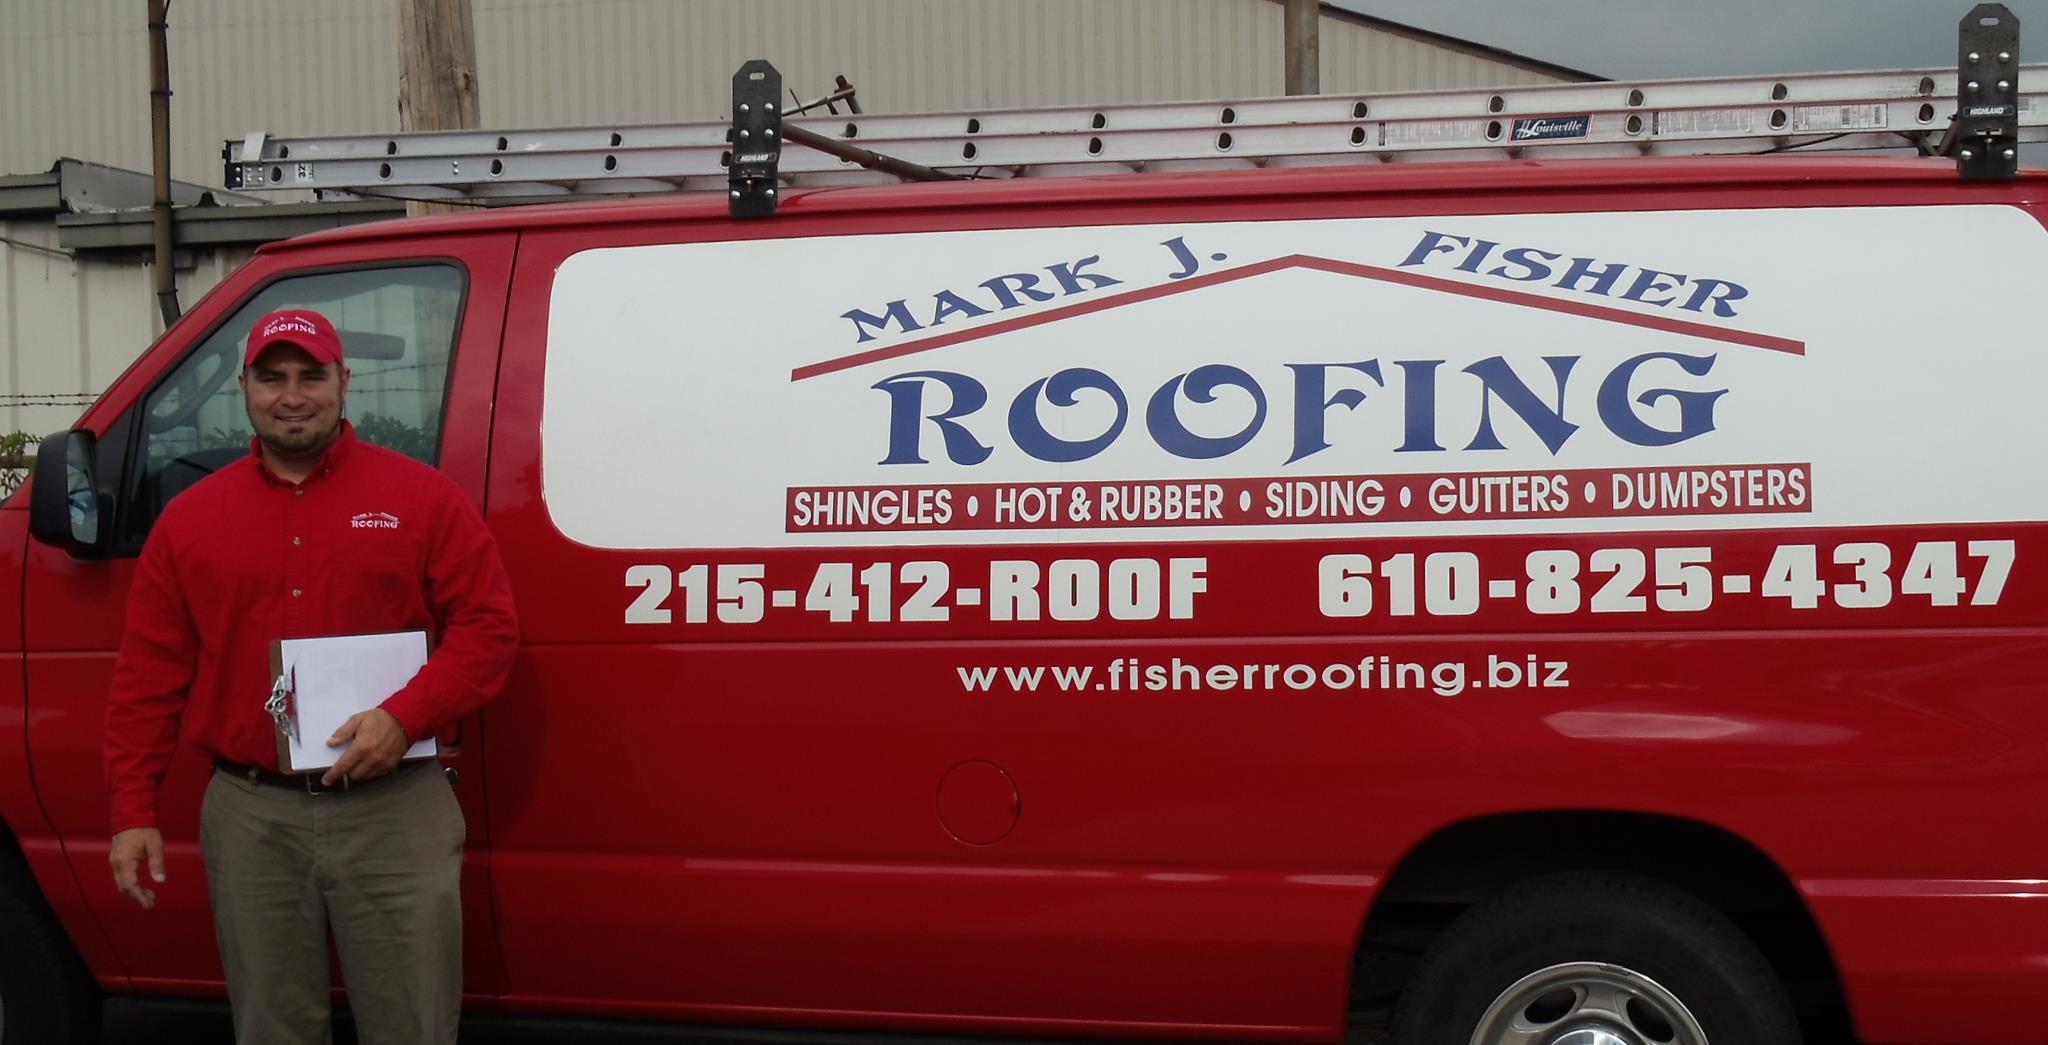 Mark J. Fisher Roofing, LLC Logo